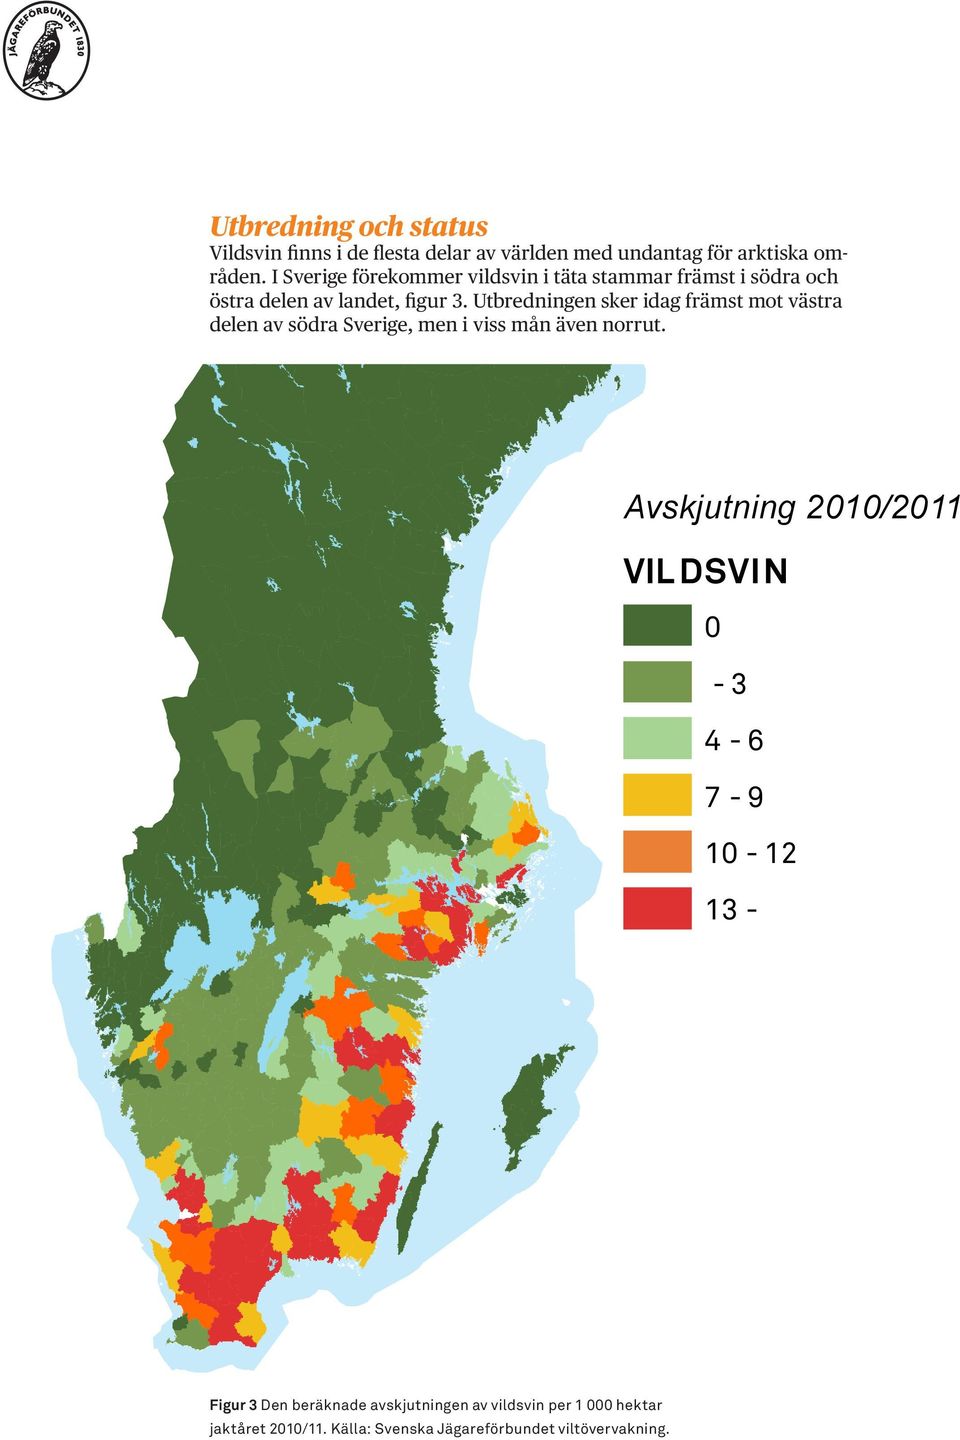 Utbredningen sker idag främst mot västra delen av södra Sverige, men i viss mån även norrut.